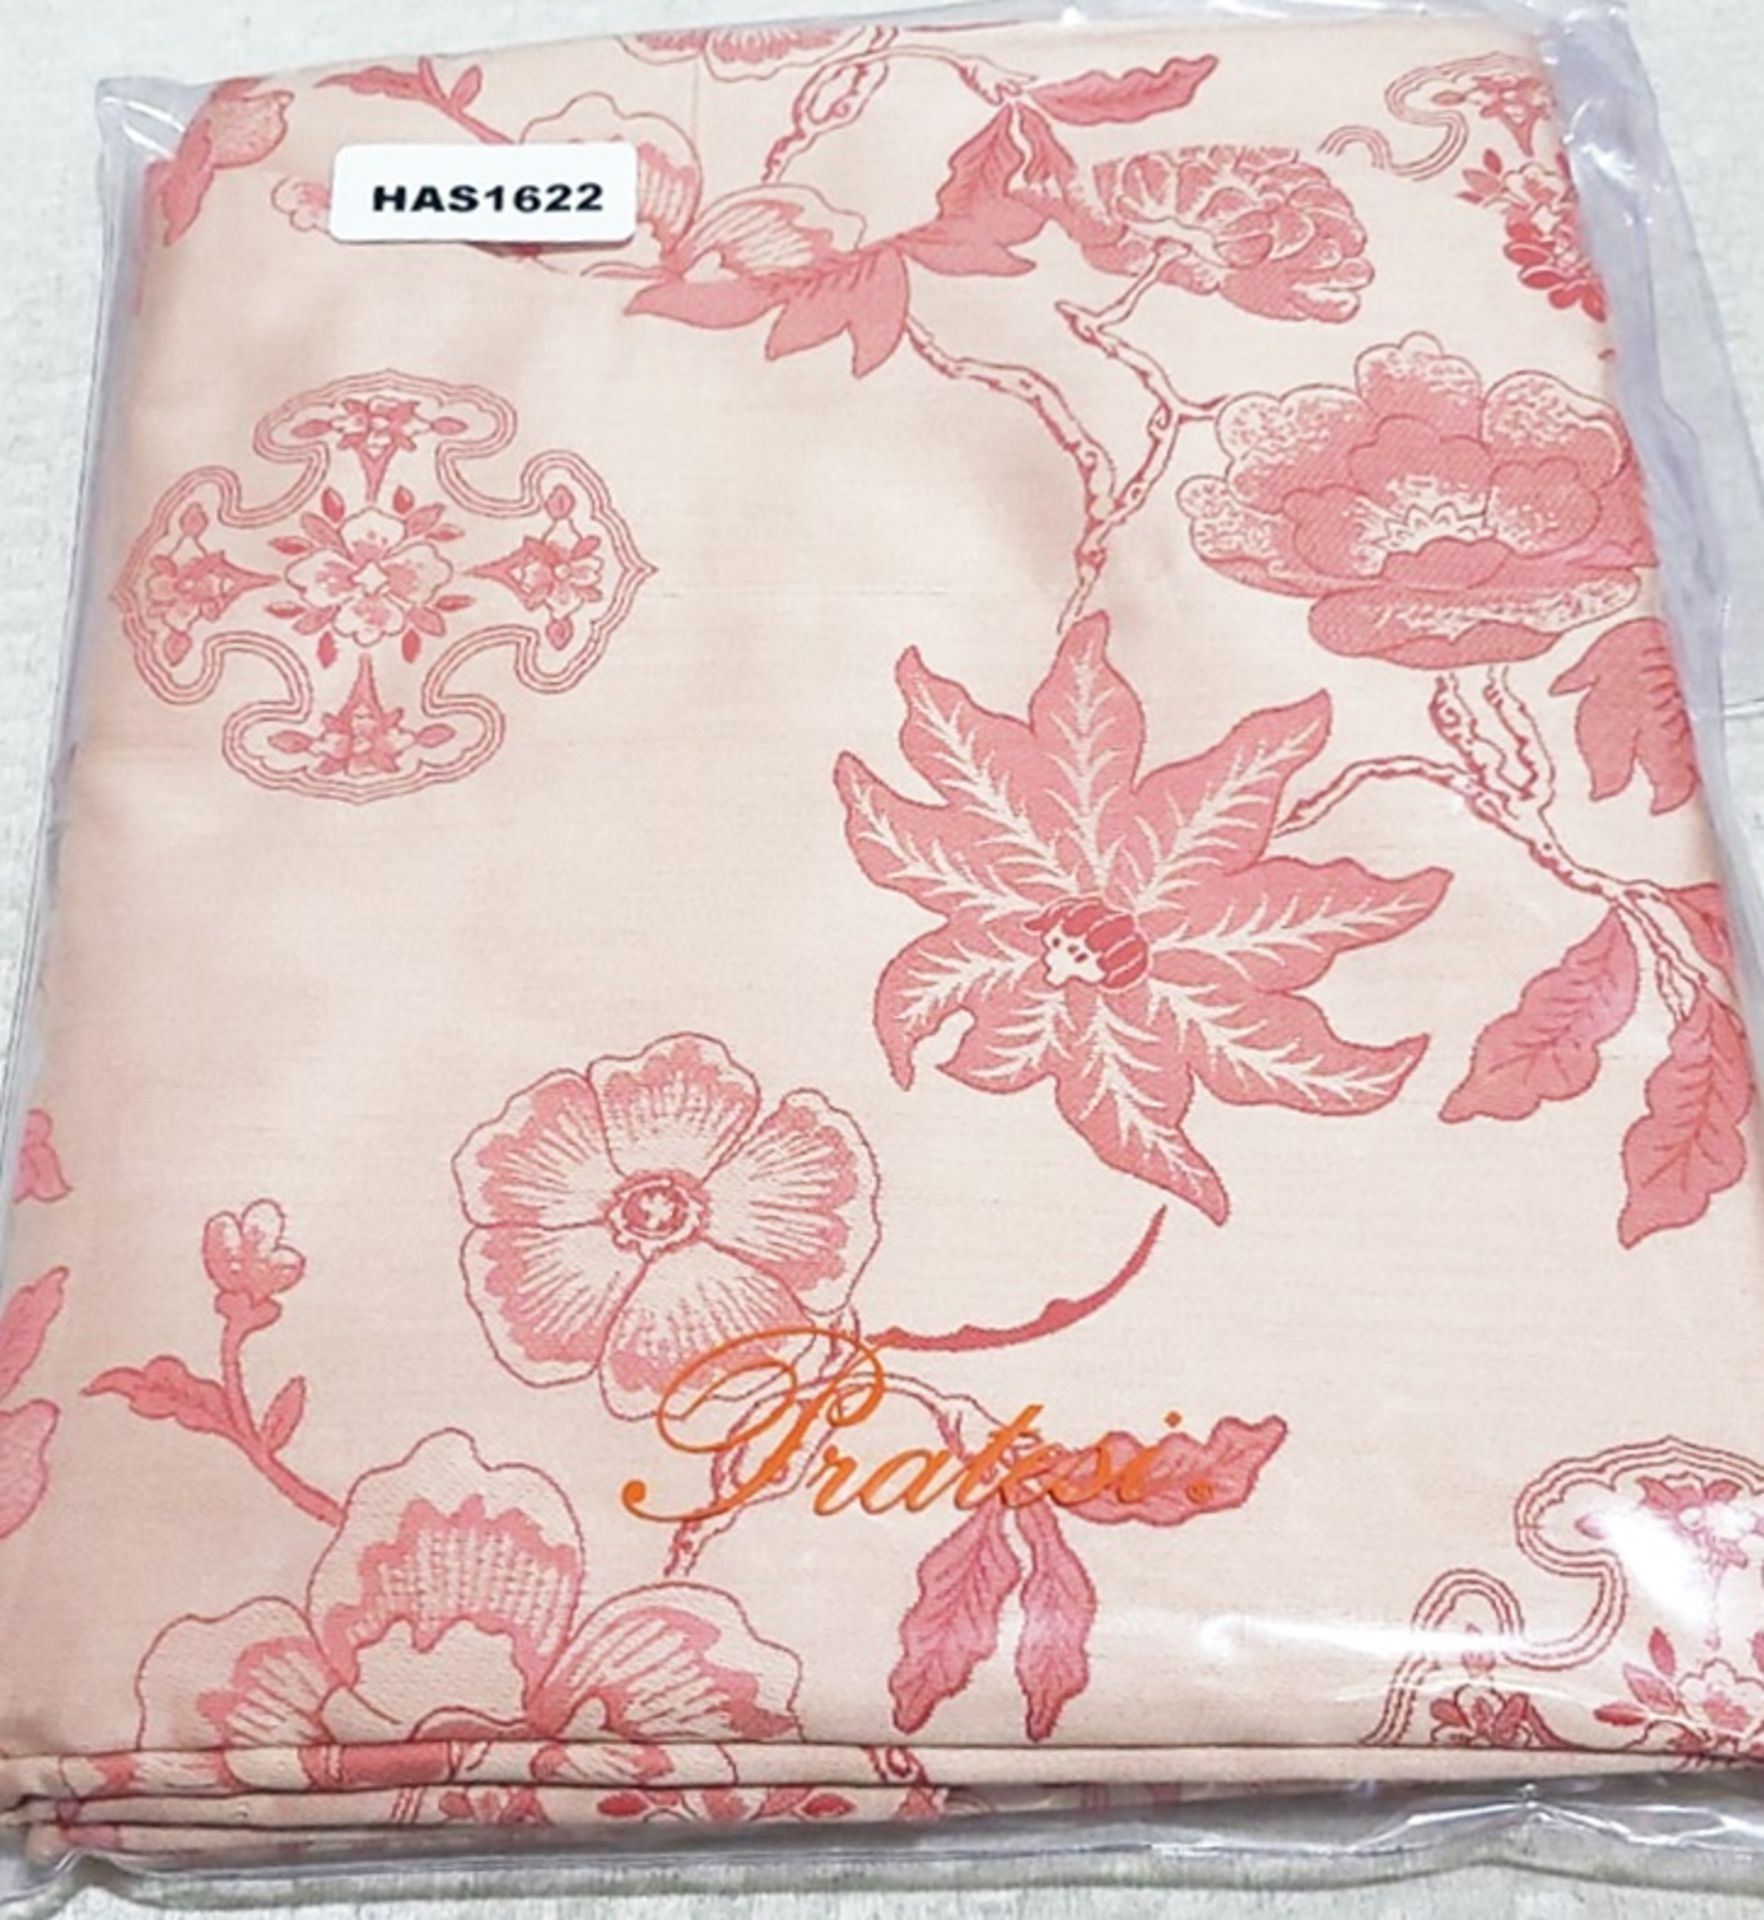 Set Of 2 x PRATESI 'Cina' Jacquard Pink Floral Print Pillow Shams (50x75cm)